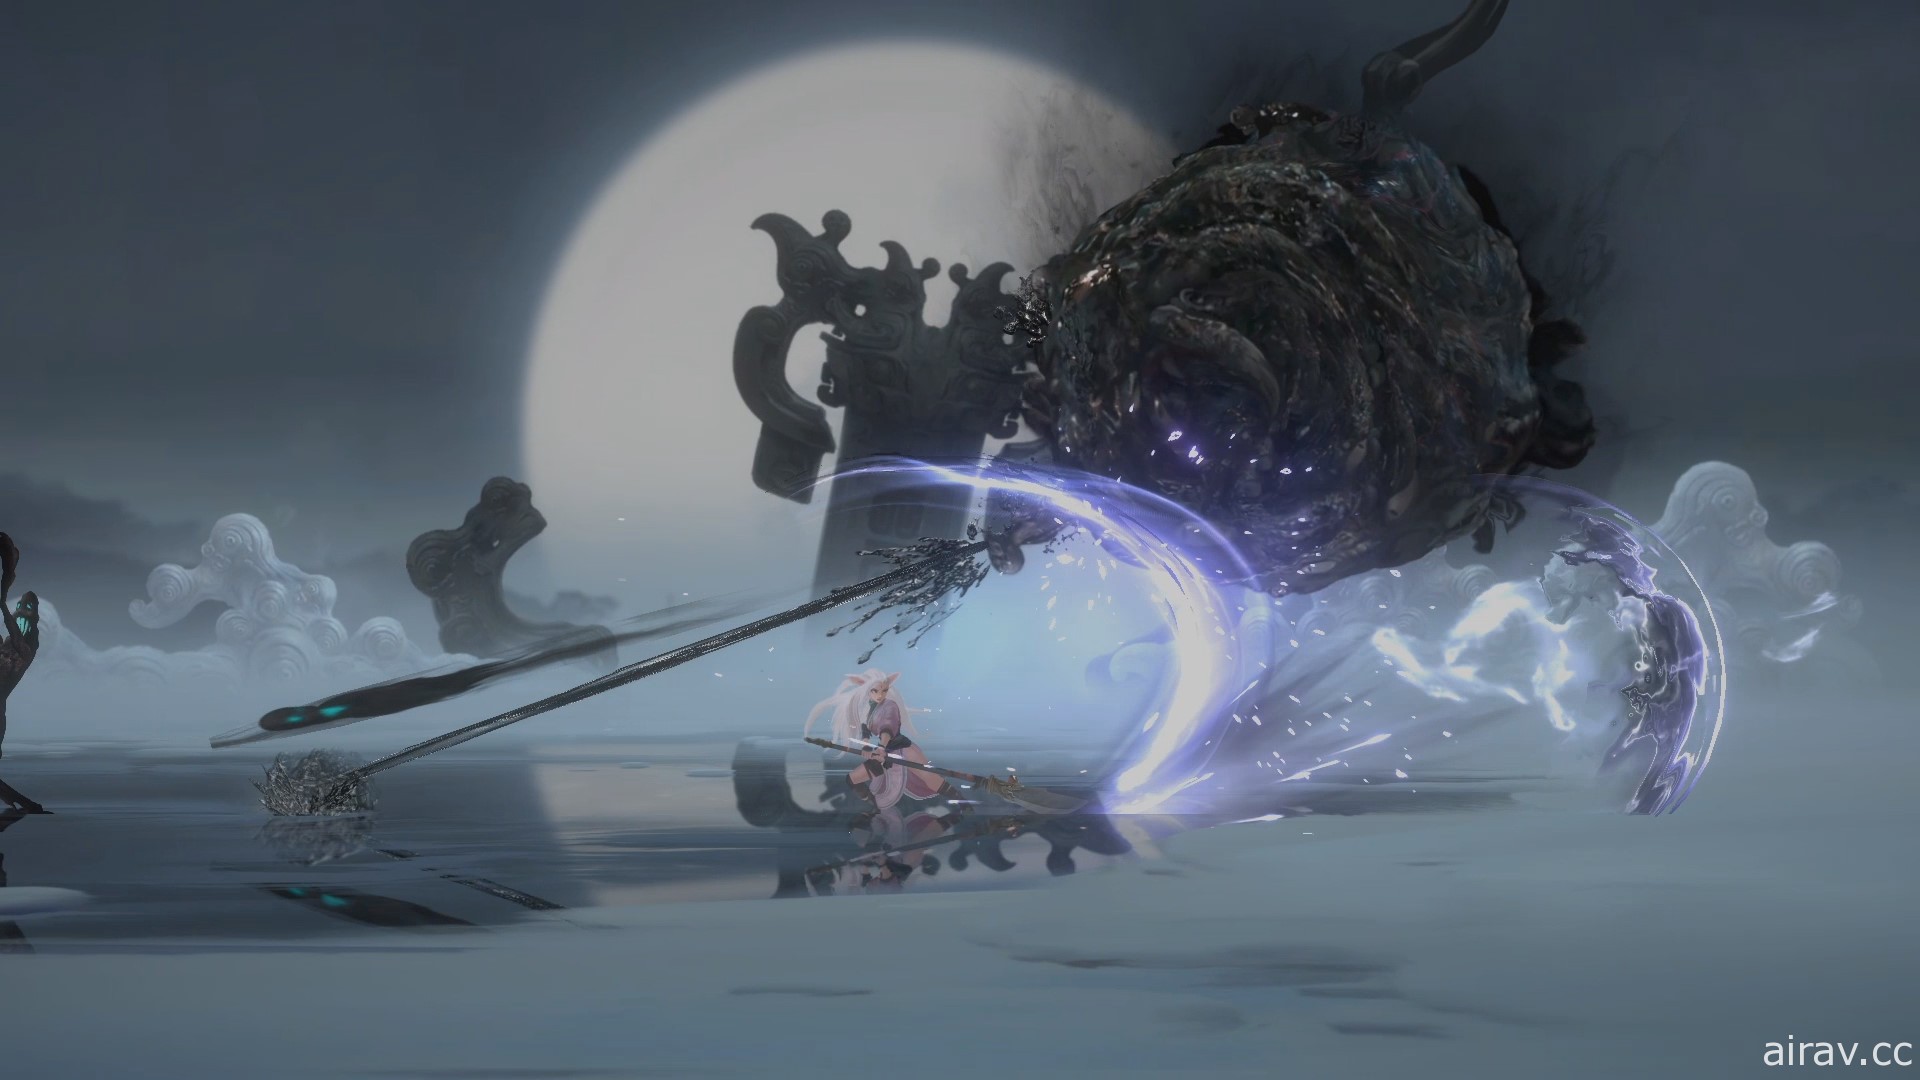 橫向卷軸動作遊戲《斬妖行》正式上市 擁有半妖血統的新角色「夏侯雪」登場